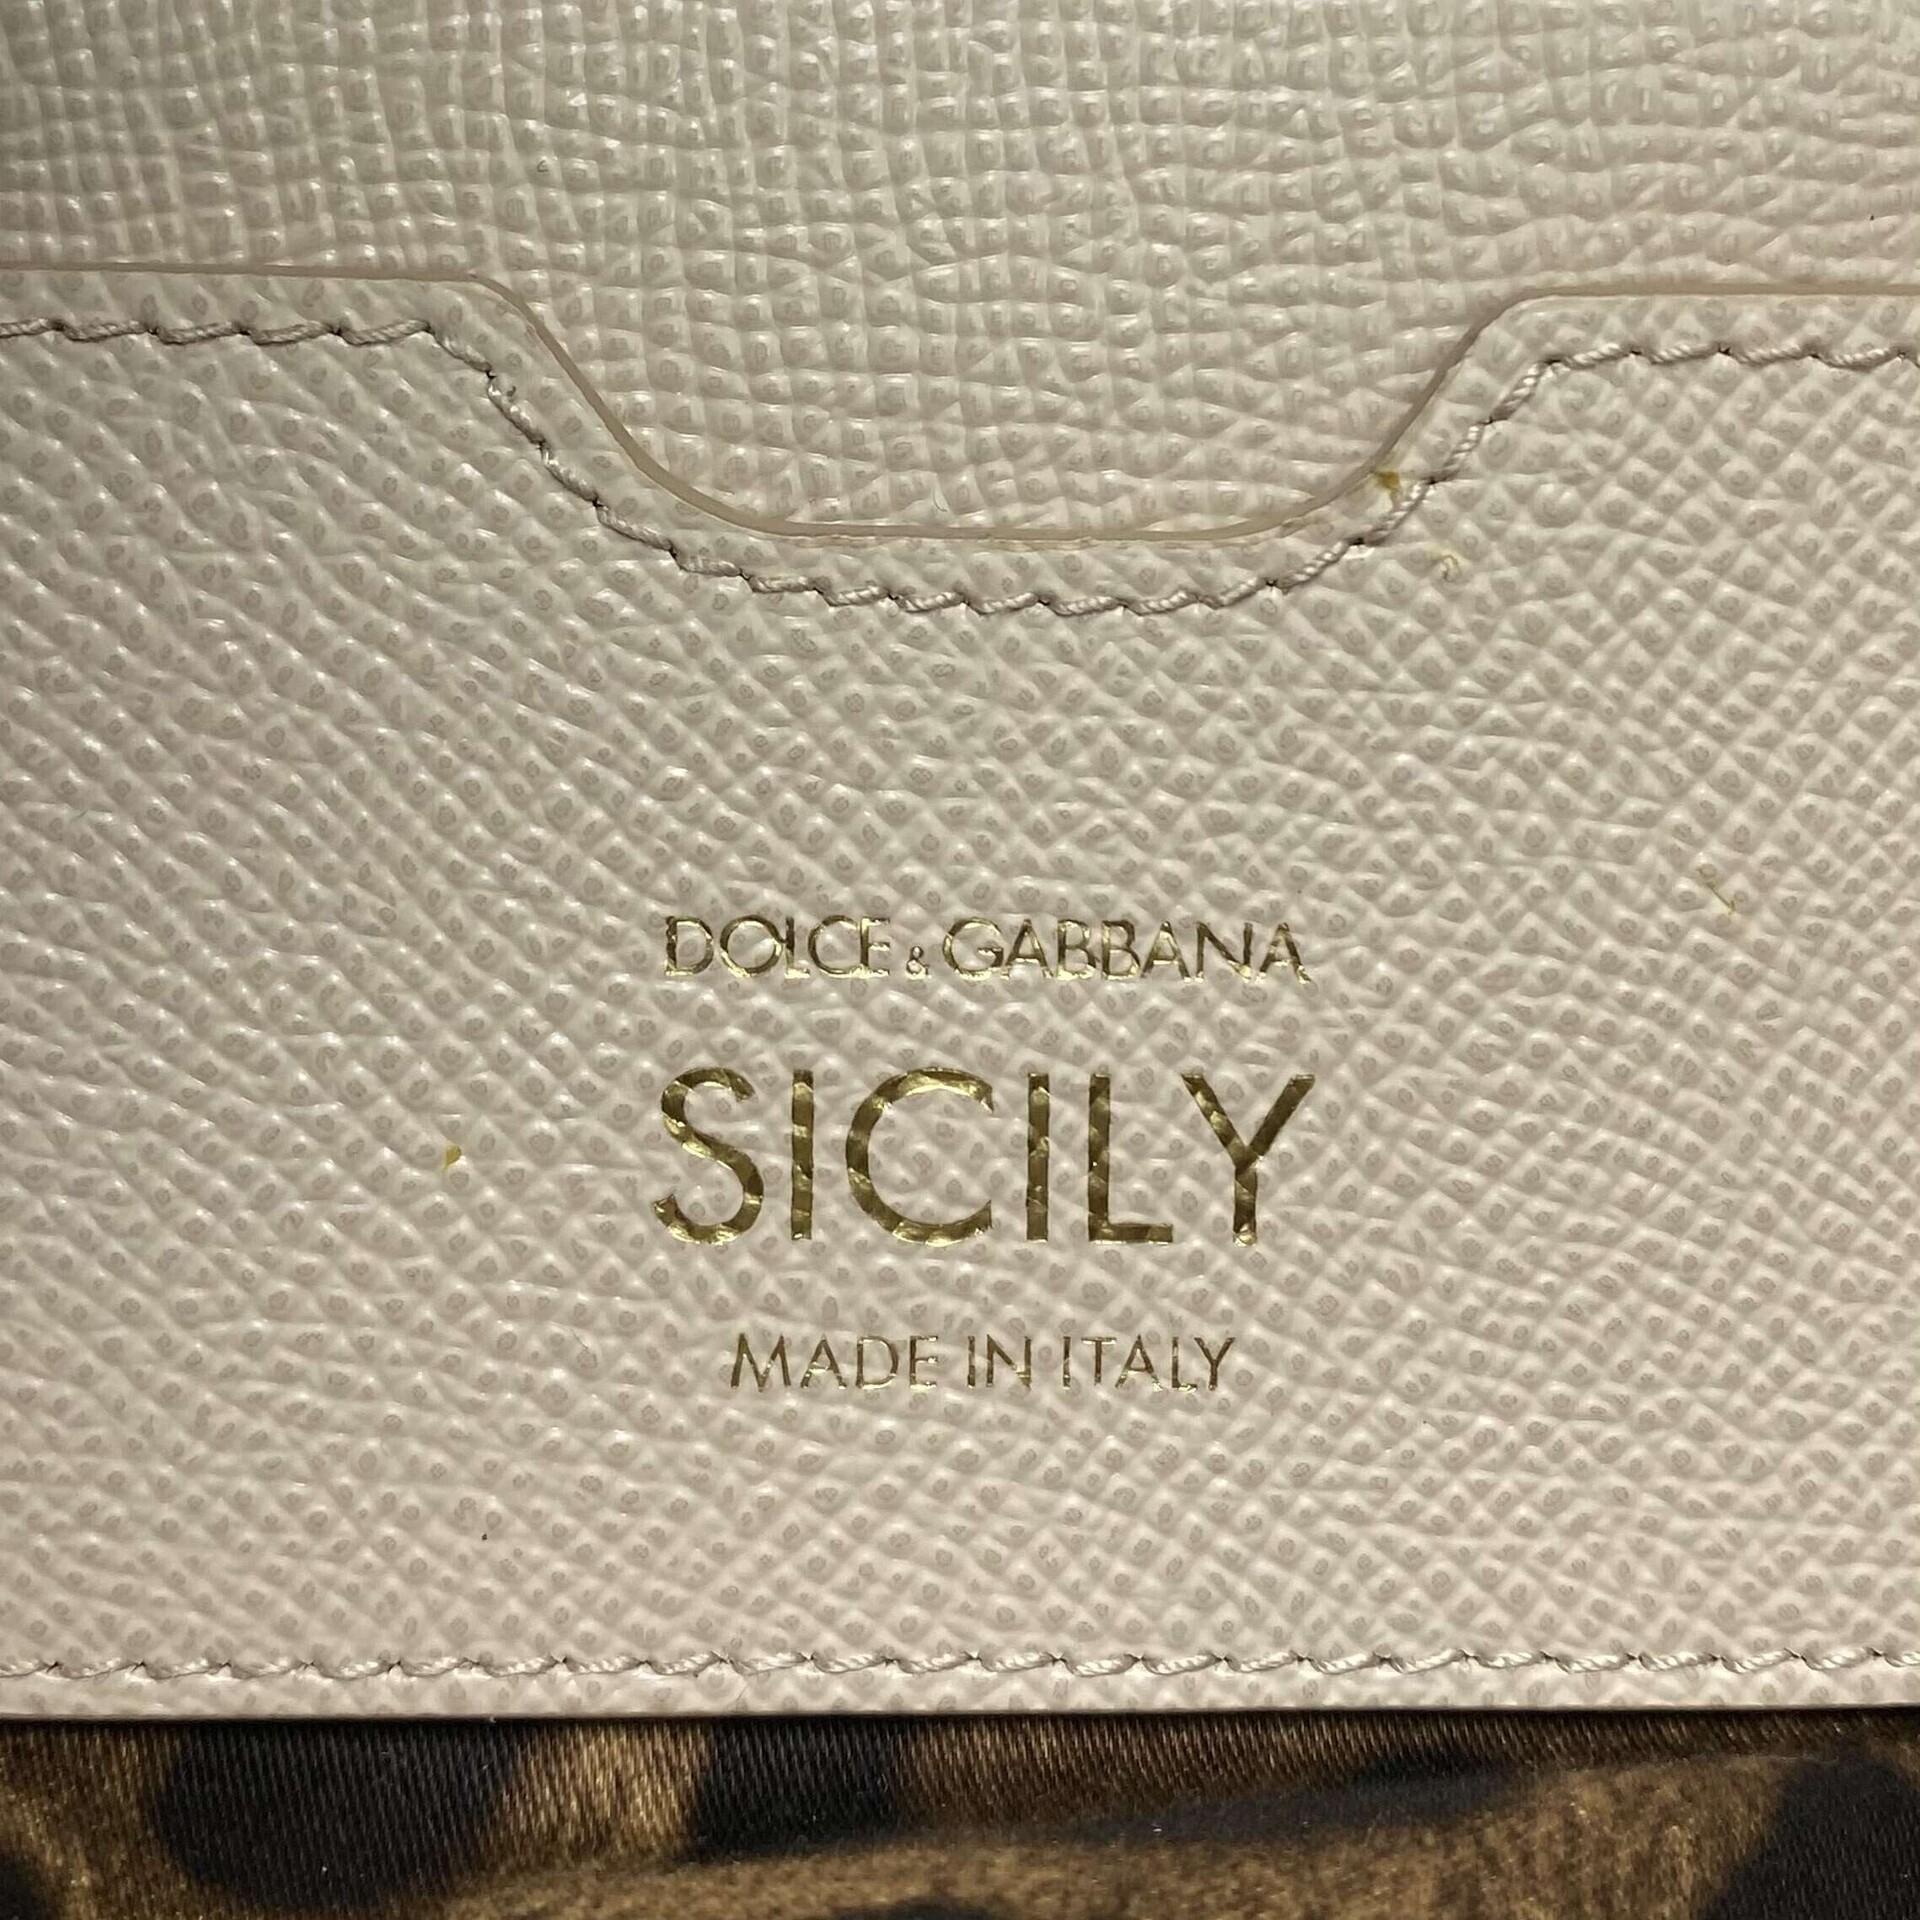 Bolsa Dolce & Gabbana Sicily Nude